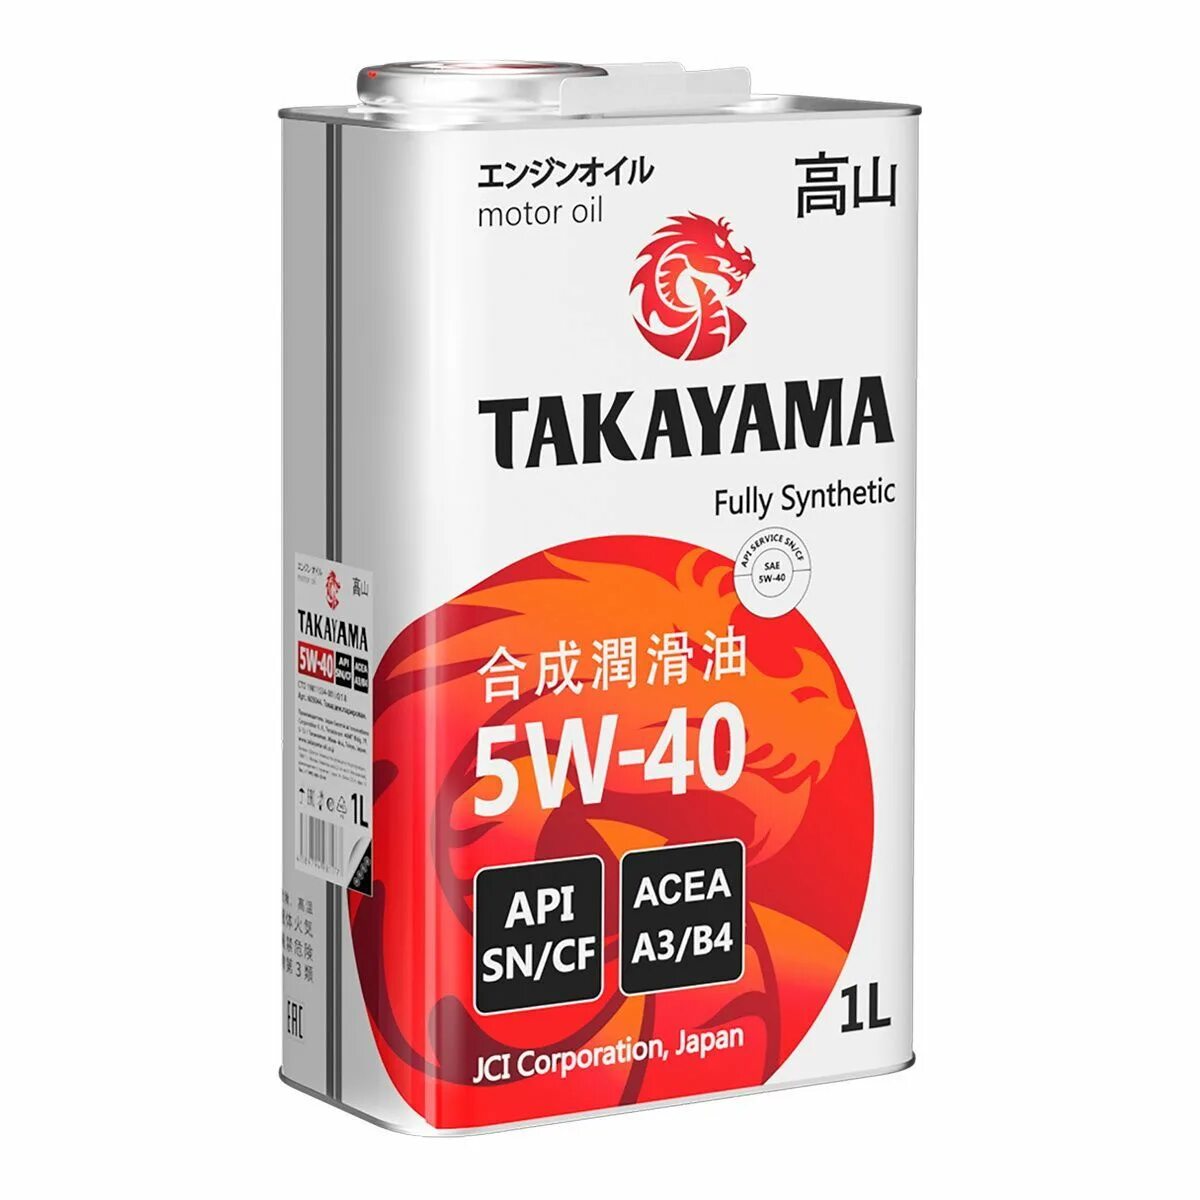 Takayama 5w-40 API SN/CF. Takayama SAE 5w-40 API CF, SN a3/b4. 605045 Takayama масло Takayama SAE  5w40. API SN/CF. ACEA a3/b4 (4л). Takayama 605521промопак Takayama акция 5w40 SN/CF синтетика 4л + 1л.